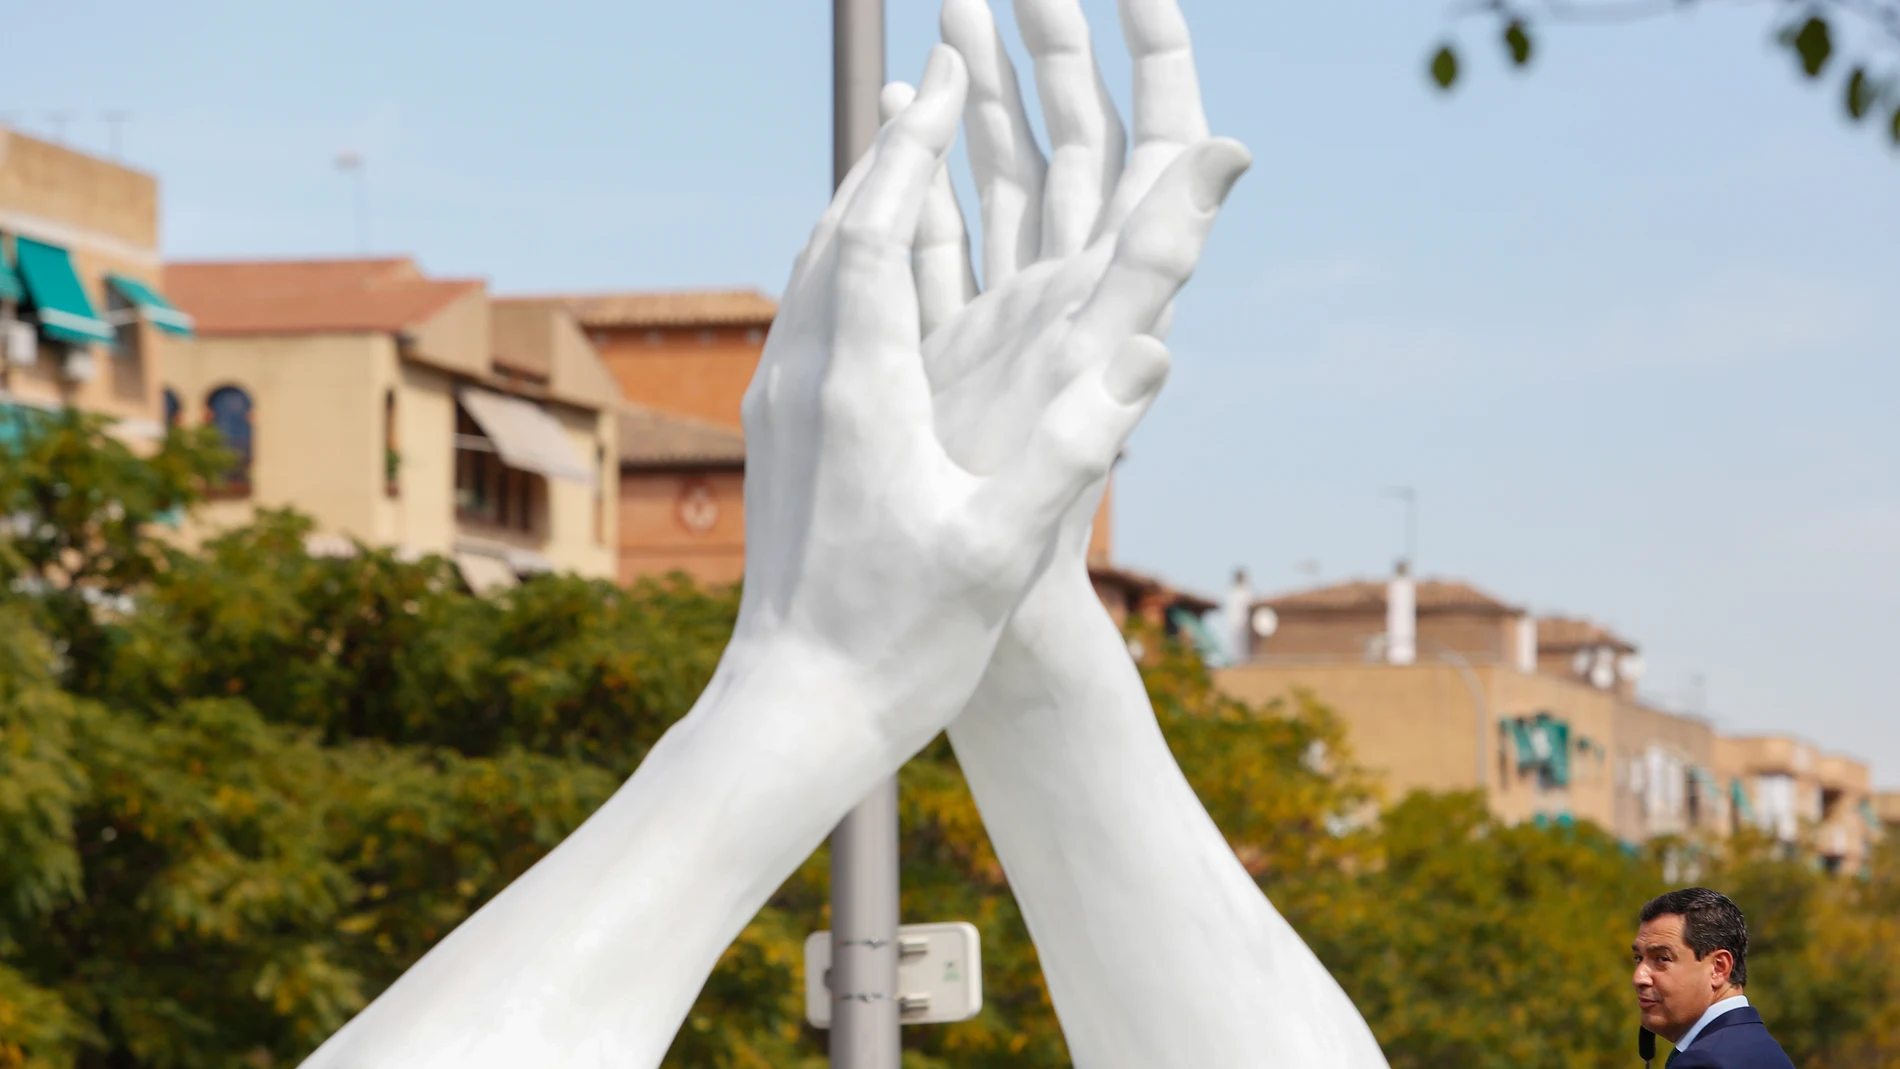 Inauguración de la escultura-homenaje a los trabajadores de la sanidad en Andalucía y de todos los sectores esenciales por su entrega y sacrificio durante la pandemia de covid-19